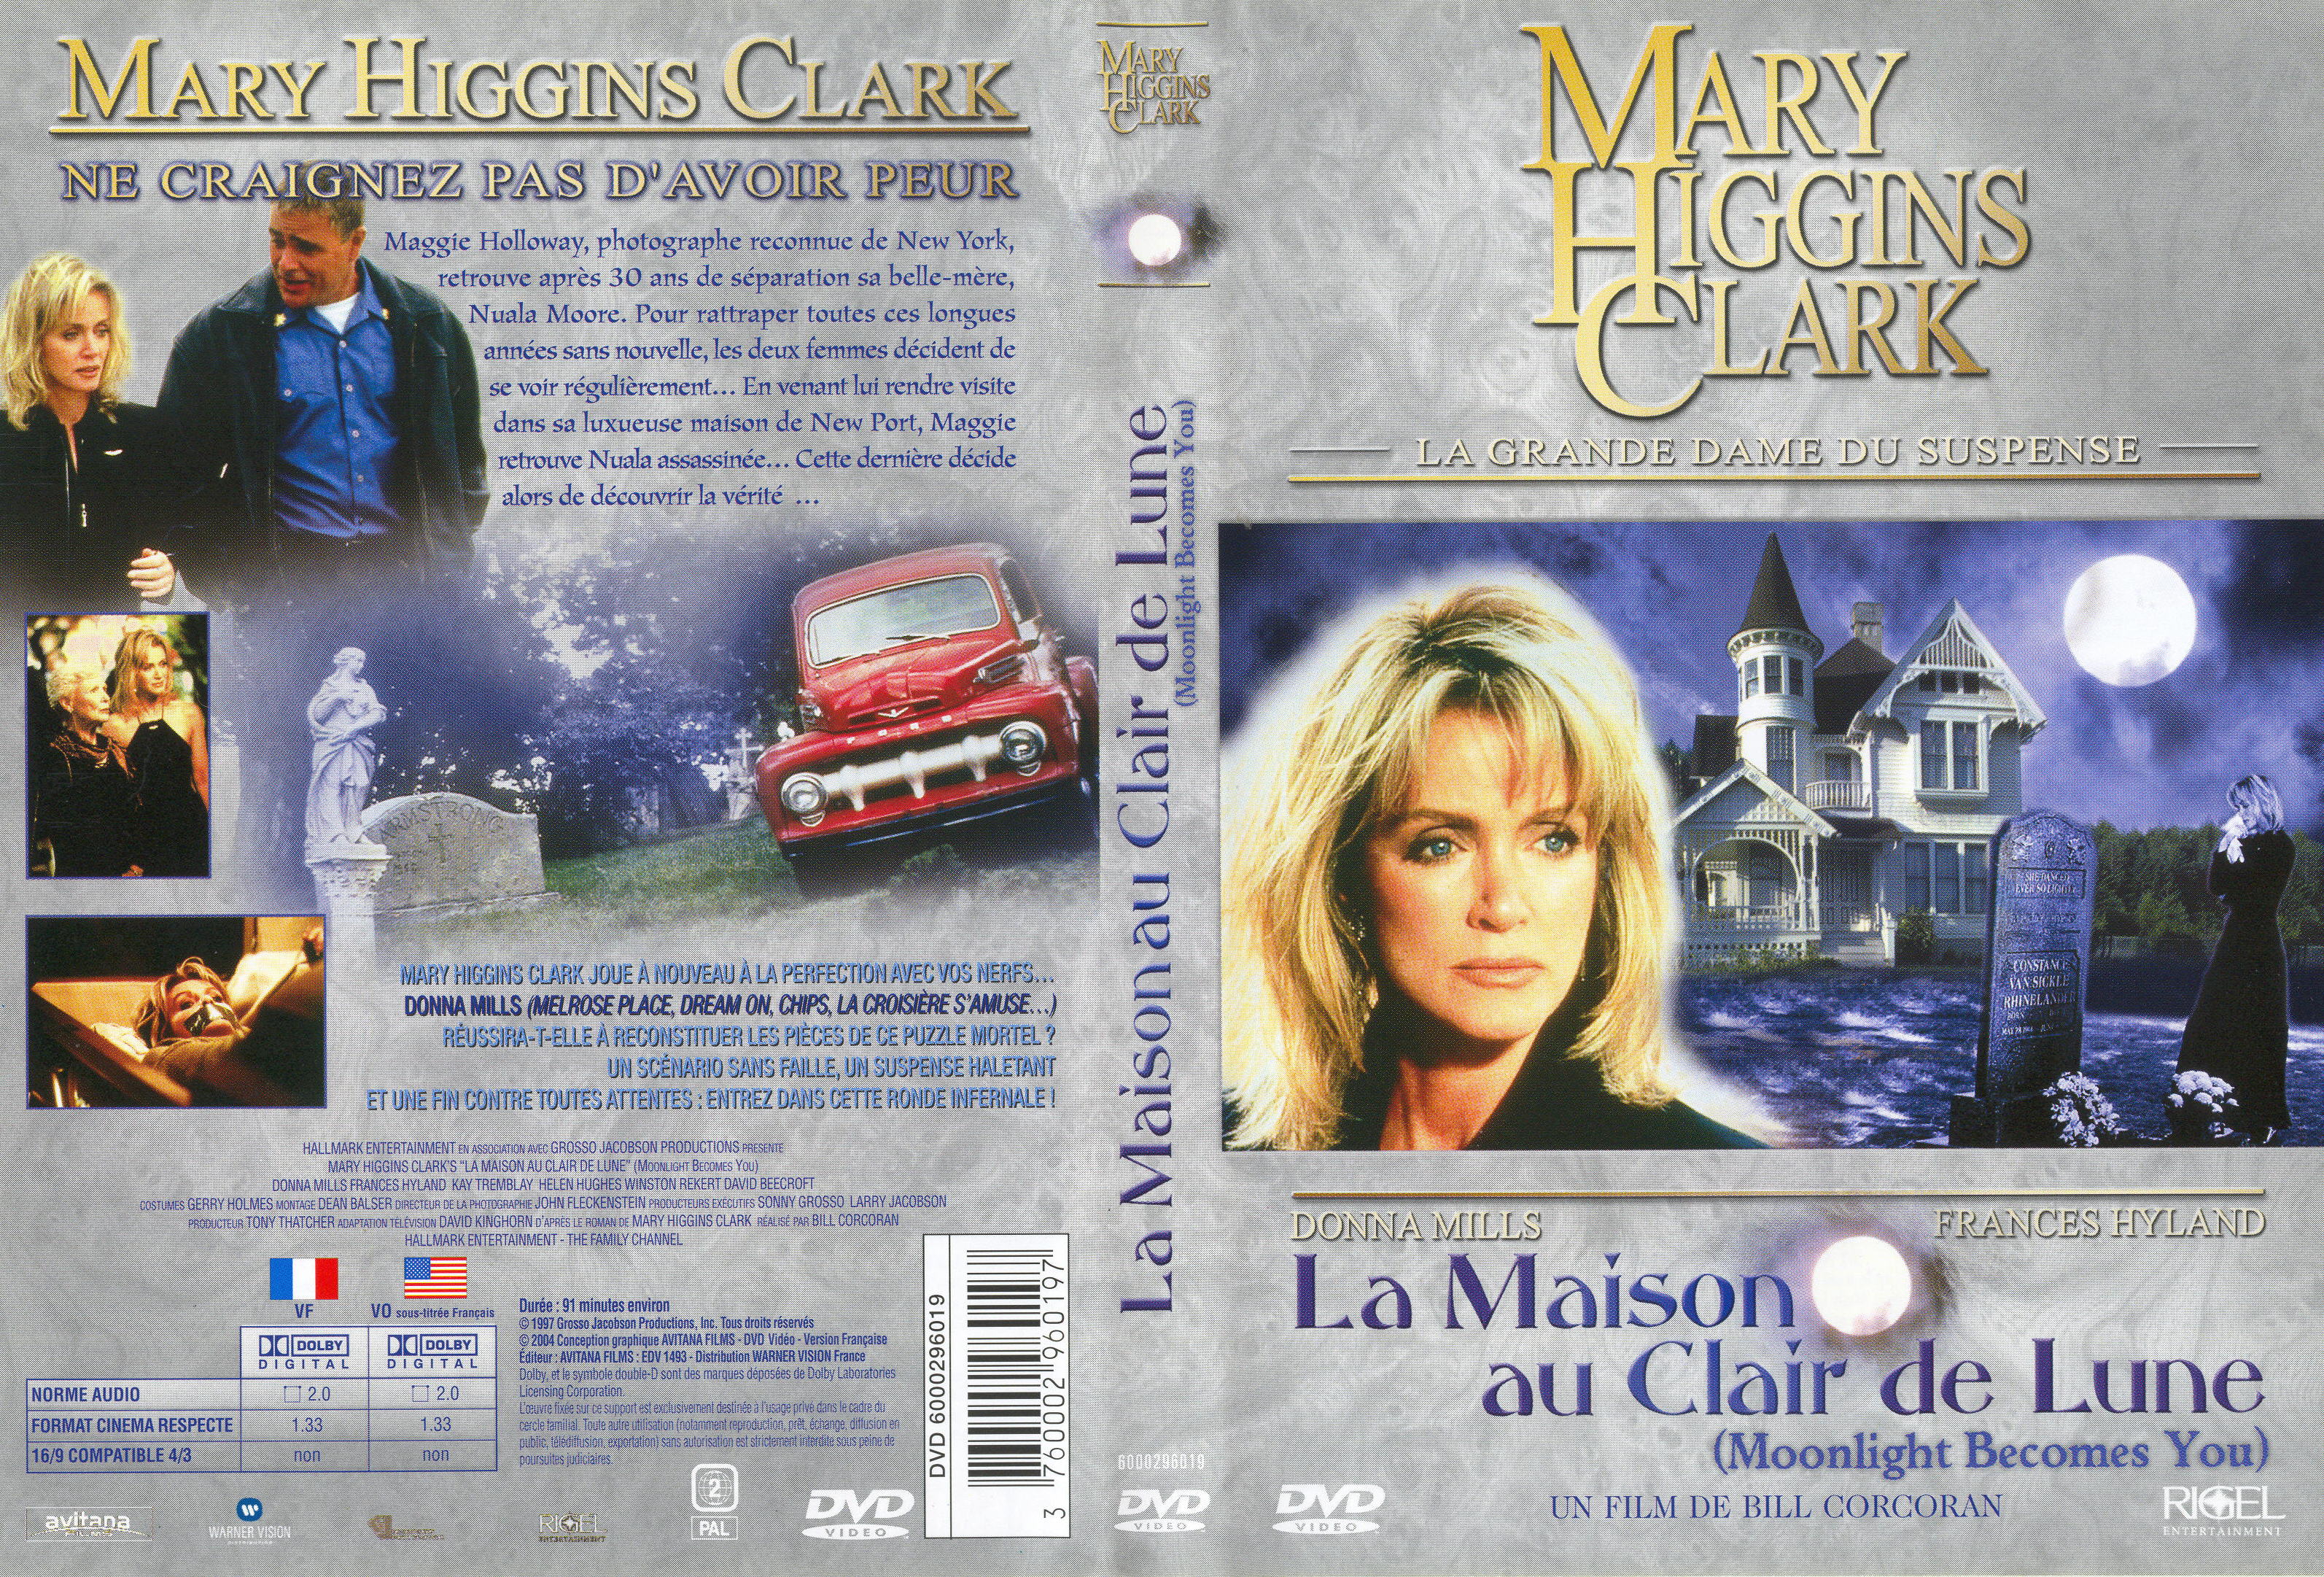 Jaquette DVD de Mary Higgins Clark - La maison au clair de lune - Cinéma Passion